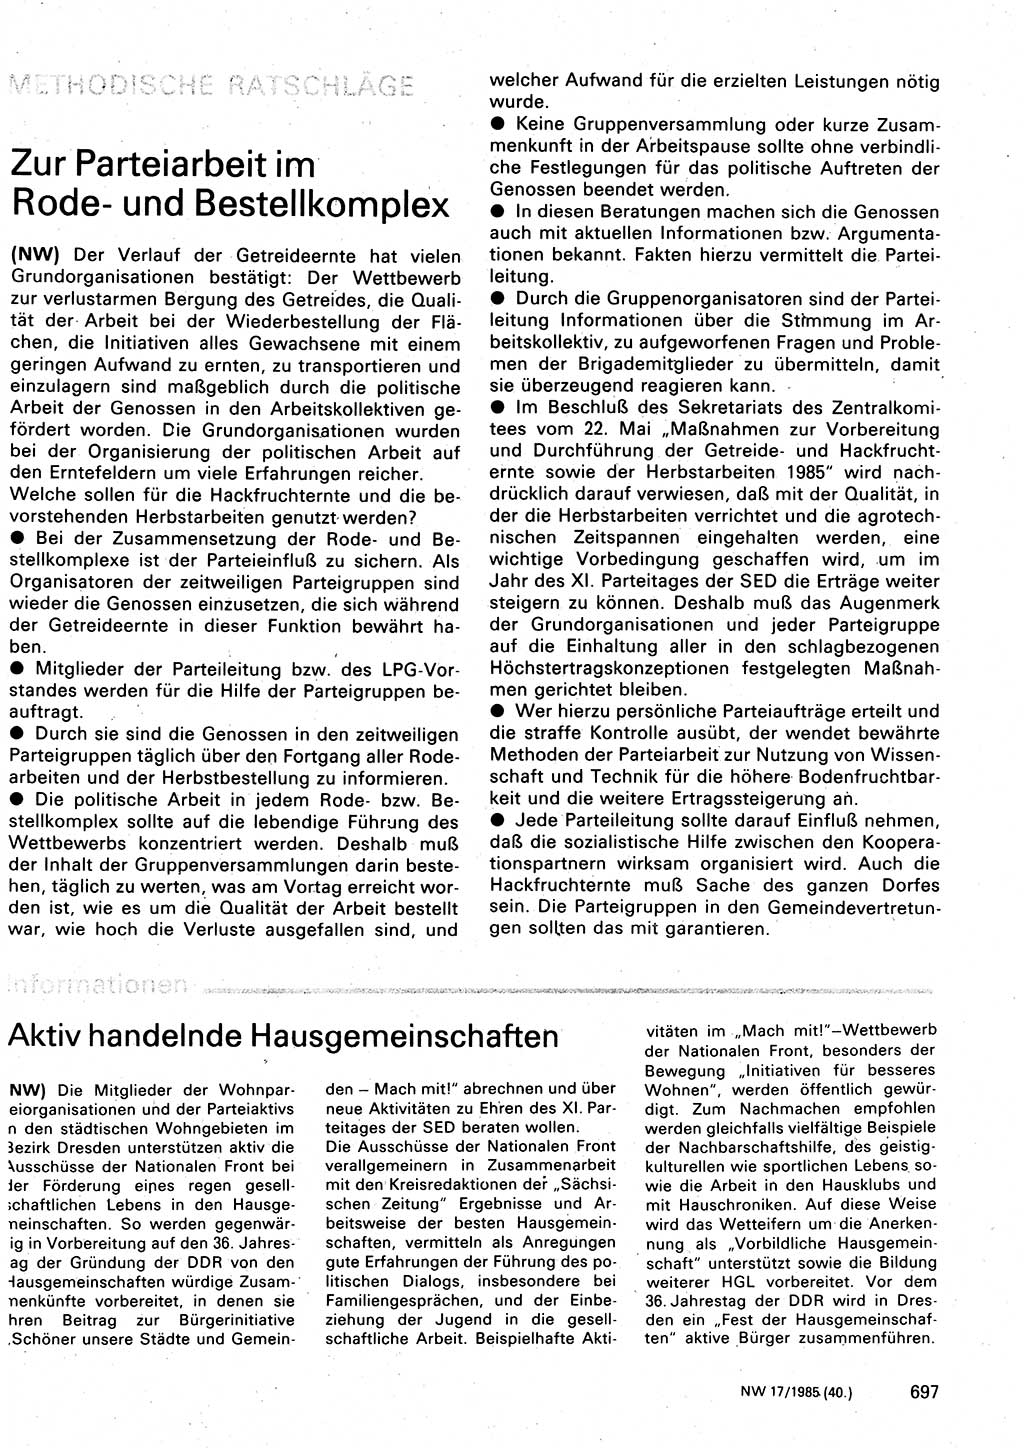 Neuer Weg (NW), Organ des Zentralkomitees (ZK) der SED (Sozialistische Einheitspartei Deutschlands) für Fragen des Parteilebens, 40. Jahrgang [Deutsche Demokratische Republik (DDR)] 1985, Seite 697 (NW ZK SED DDR 1985, S. 697)